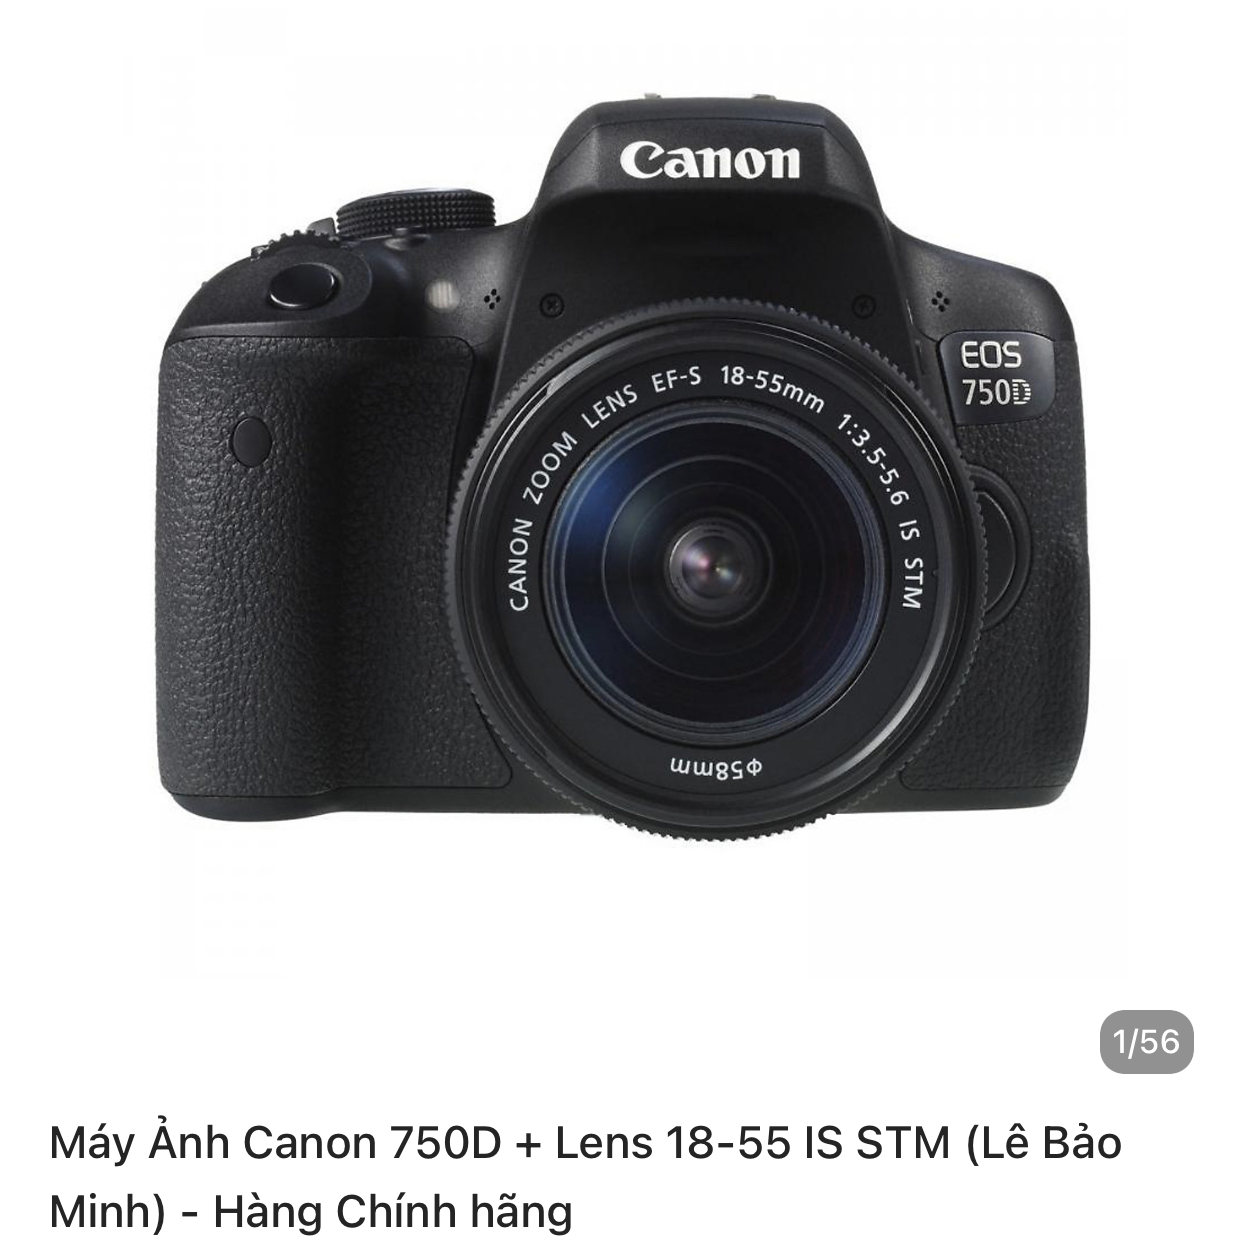 Canon 750D lens 18-55. Giờ muốn đổi Lens khác.